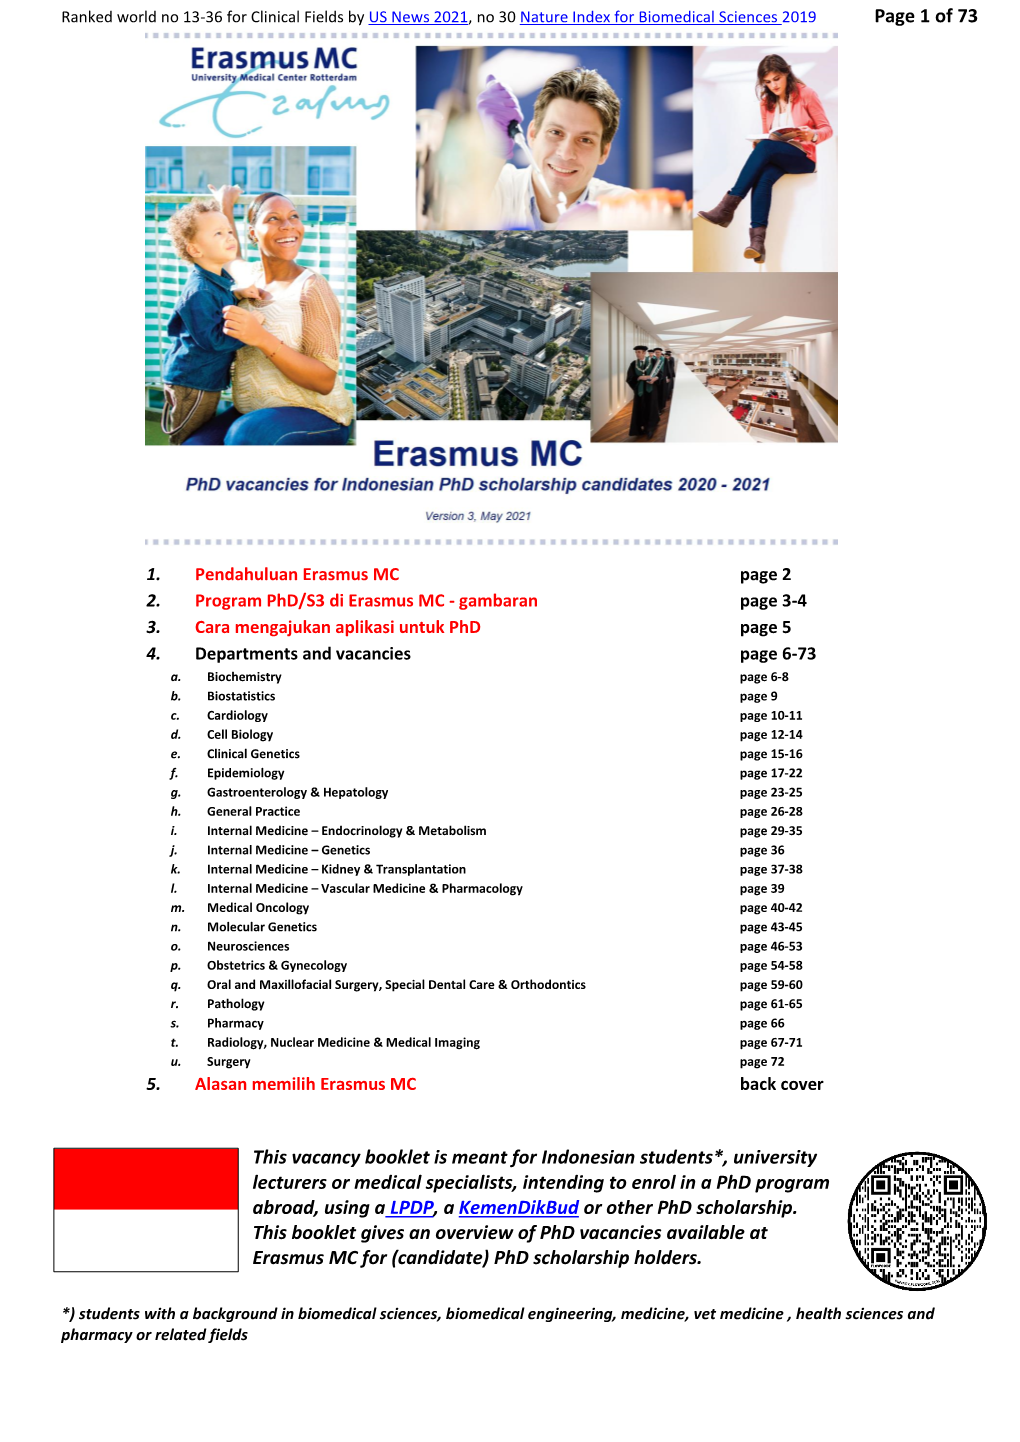 Erasmus MC Phd Scholarship Vacancy Booklet